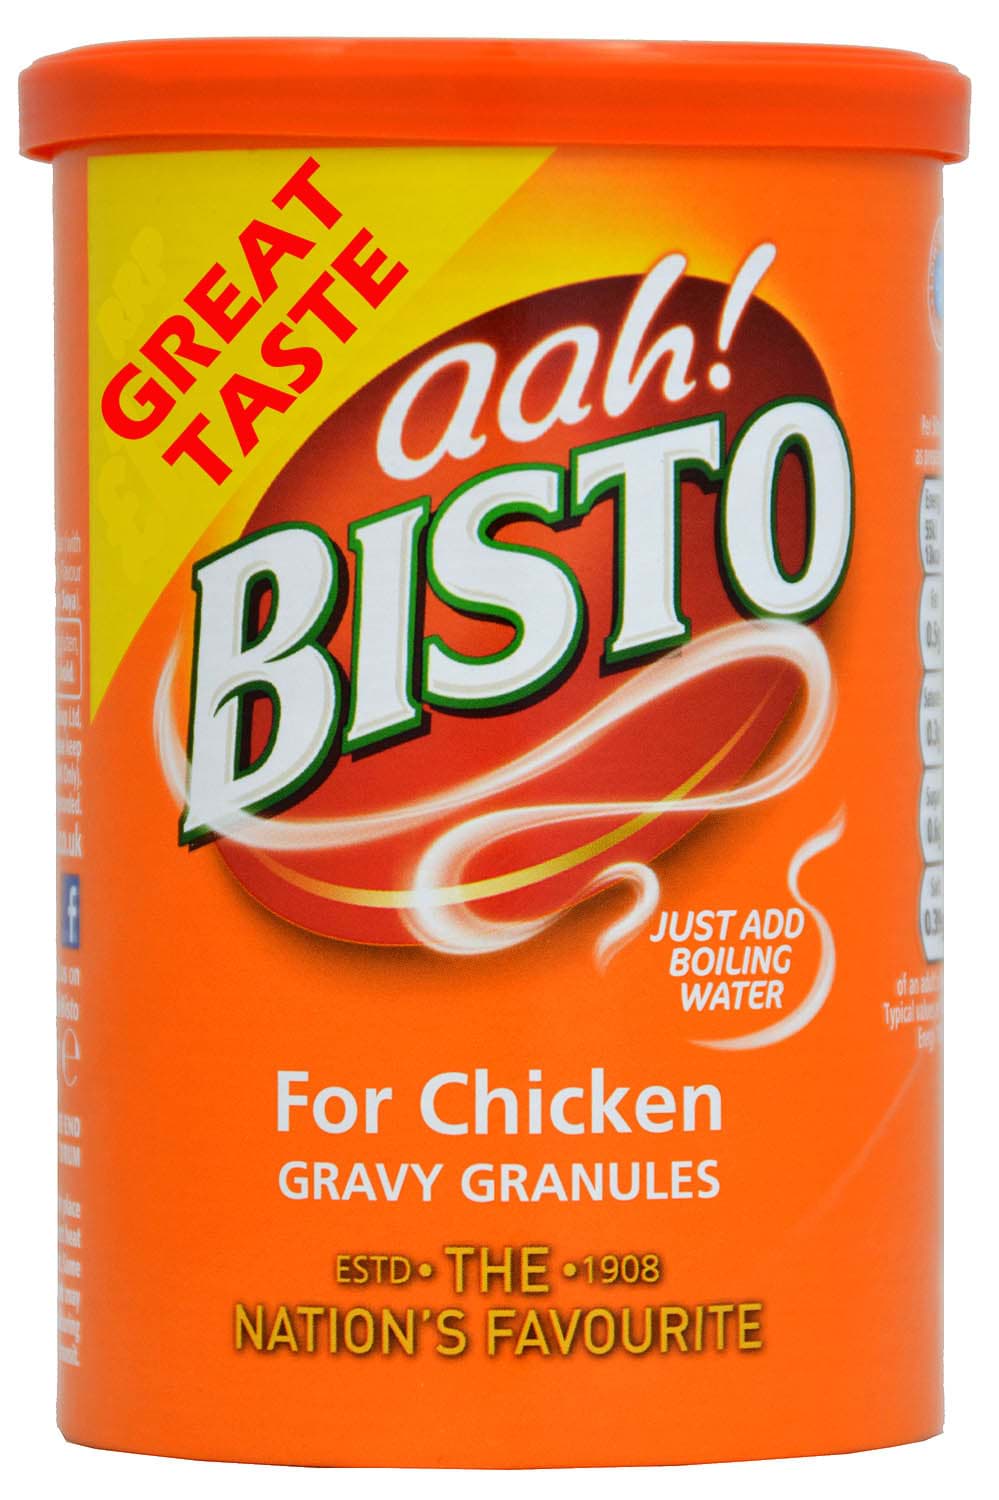 Bild von Bisto Gravy Granules for Chicken - für Geflügelgerichte